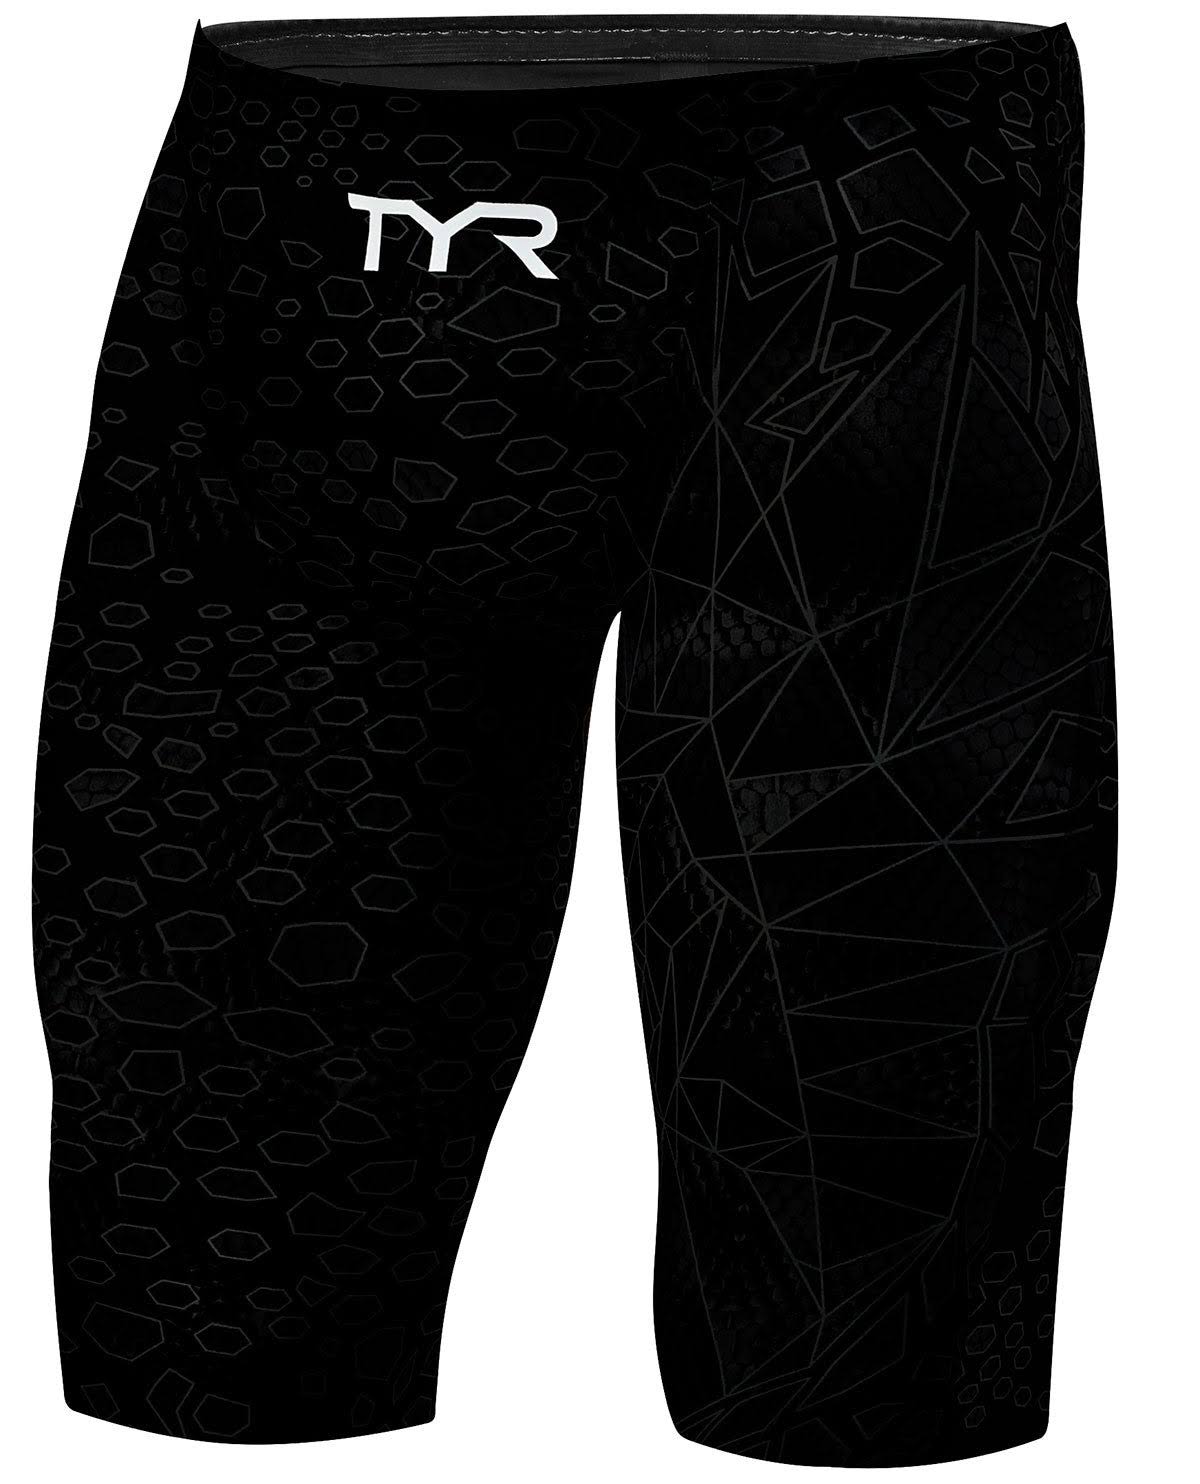 TYR Men's Avictor Supernova Jammer Swimsuit Black/Grey 26